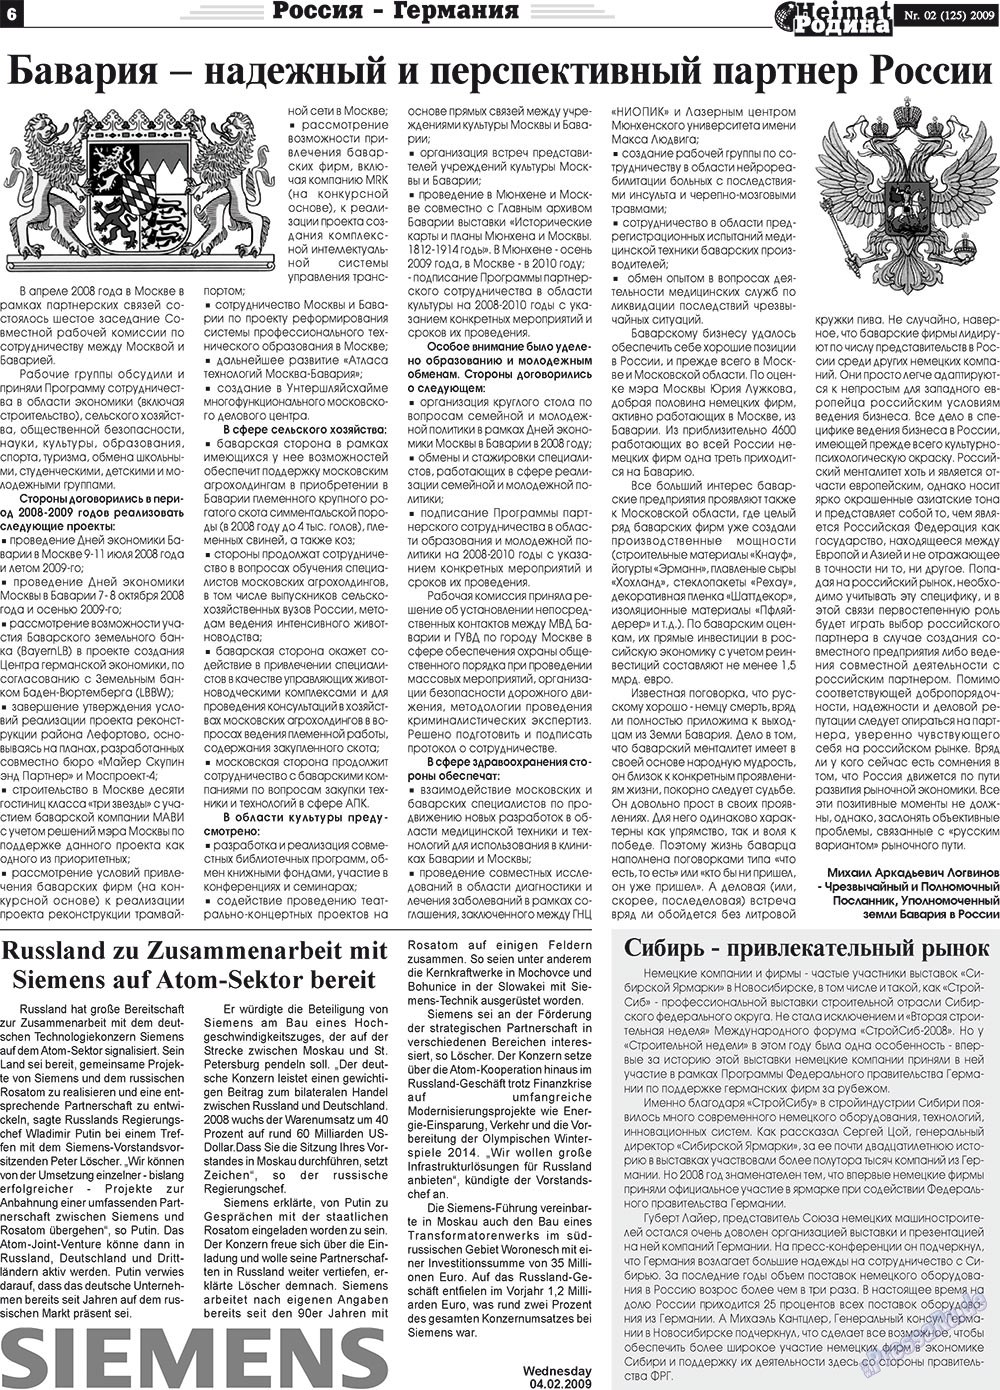 Heimat-Родина (газета). 2009 год, номер 2, стр. 6